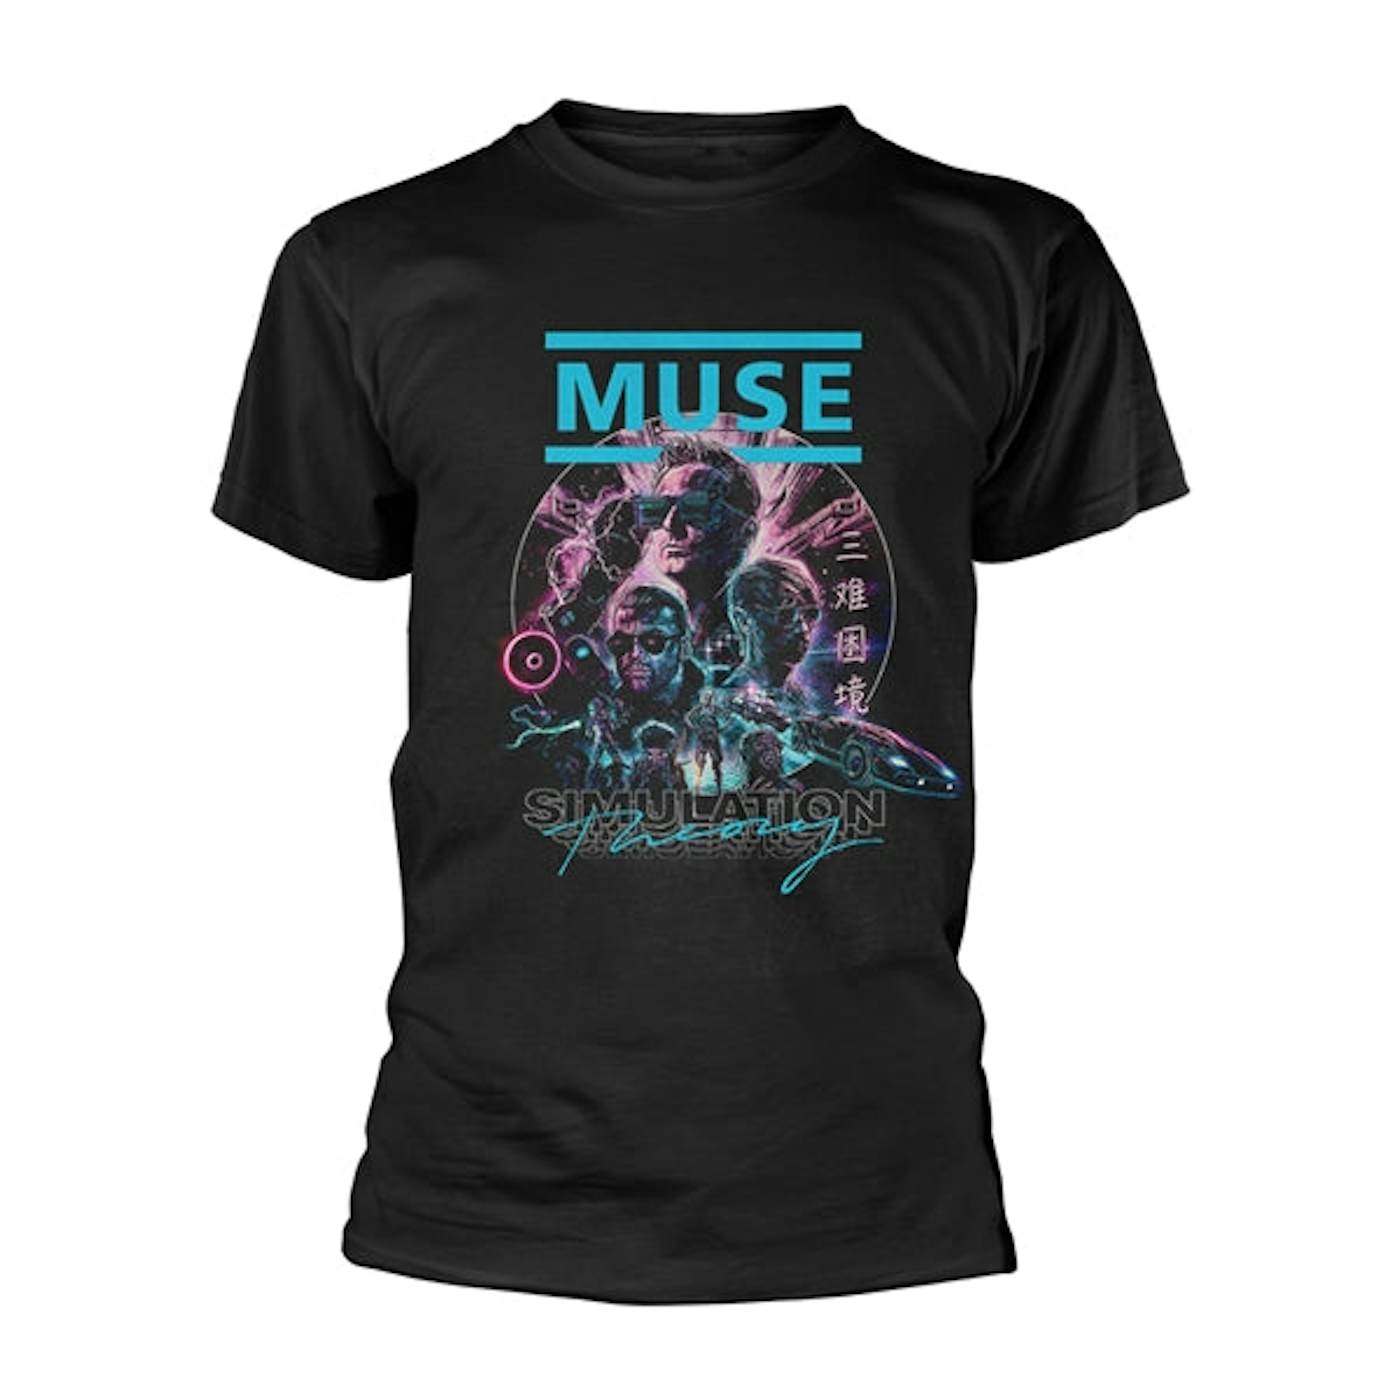 Muse T Shirt - Simulation Theory